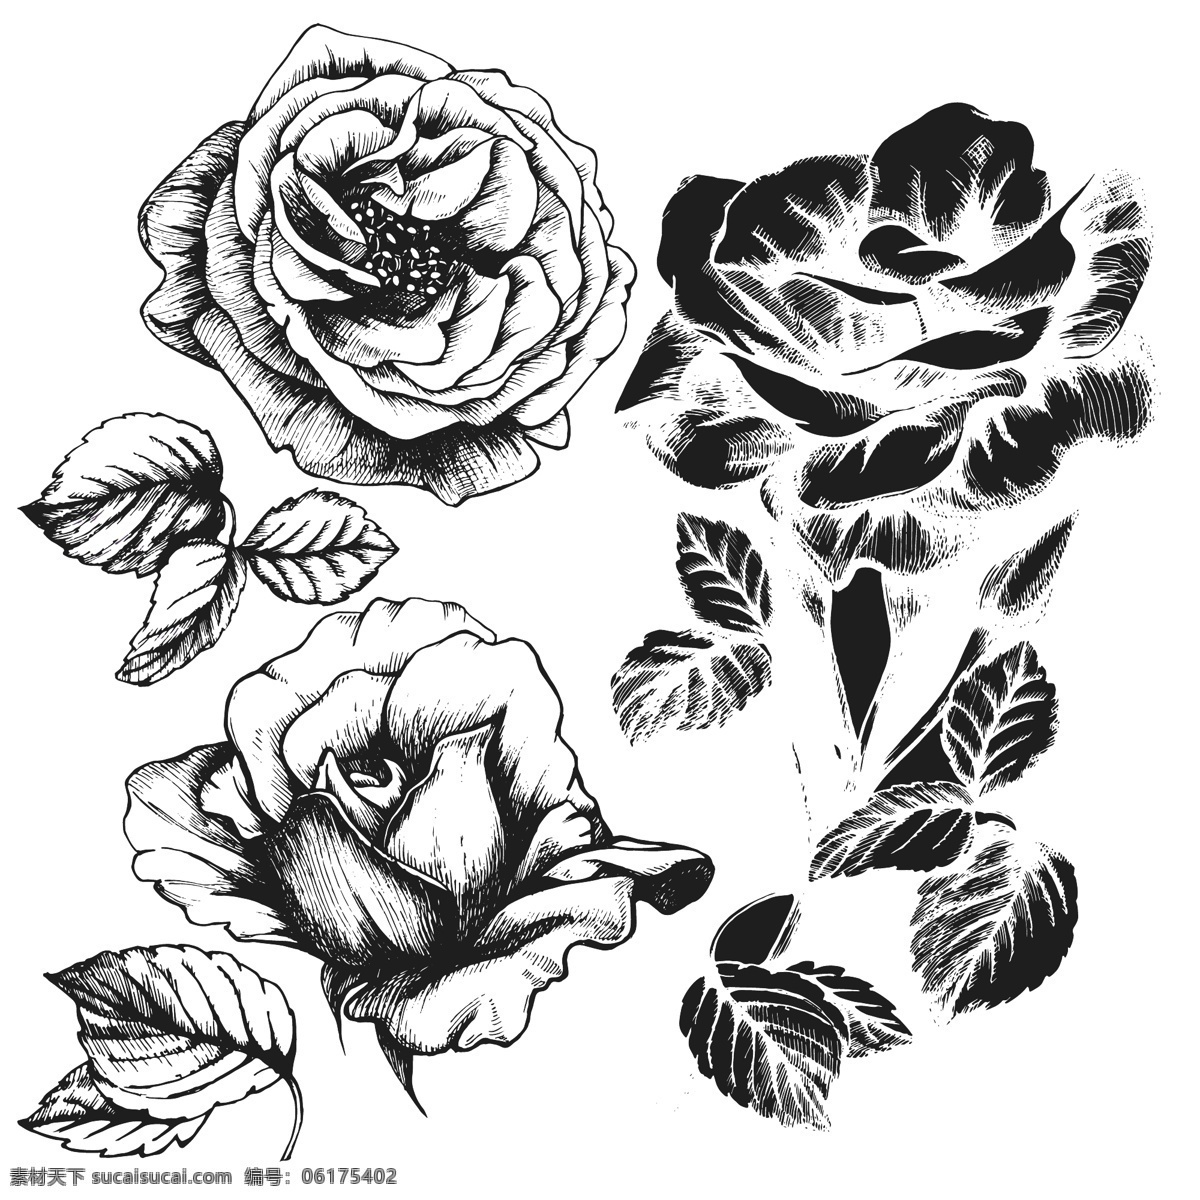 黑白 手绘 时尚 玫瑰花 插画 花朵 叶子 植物